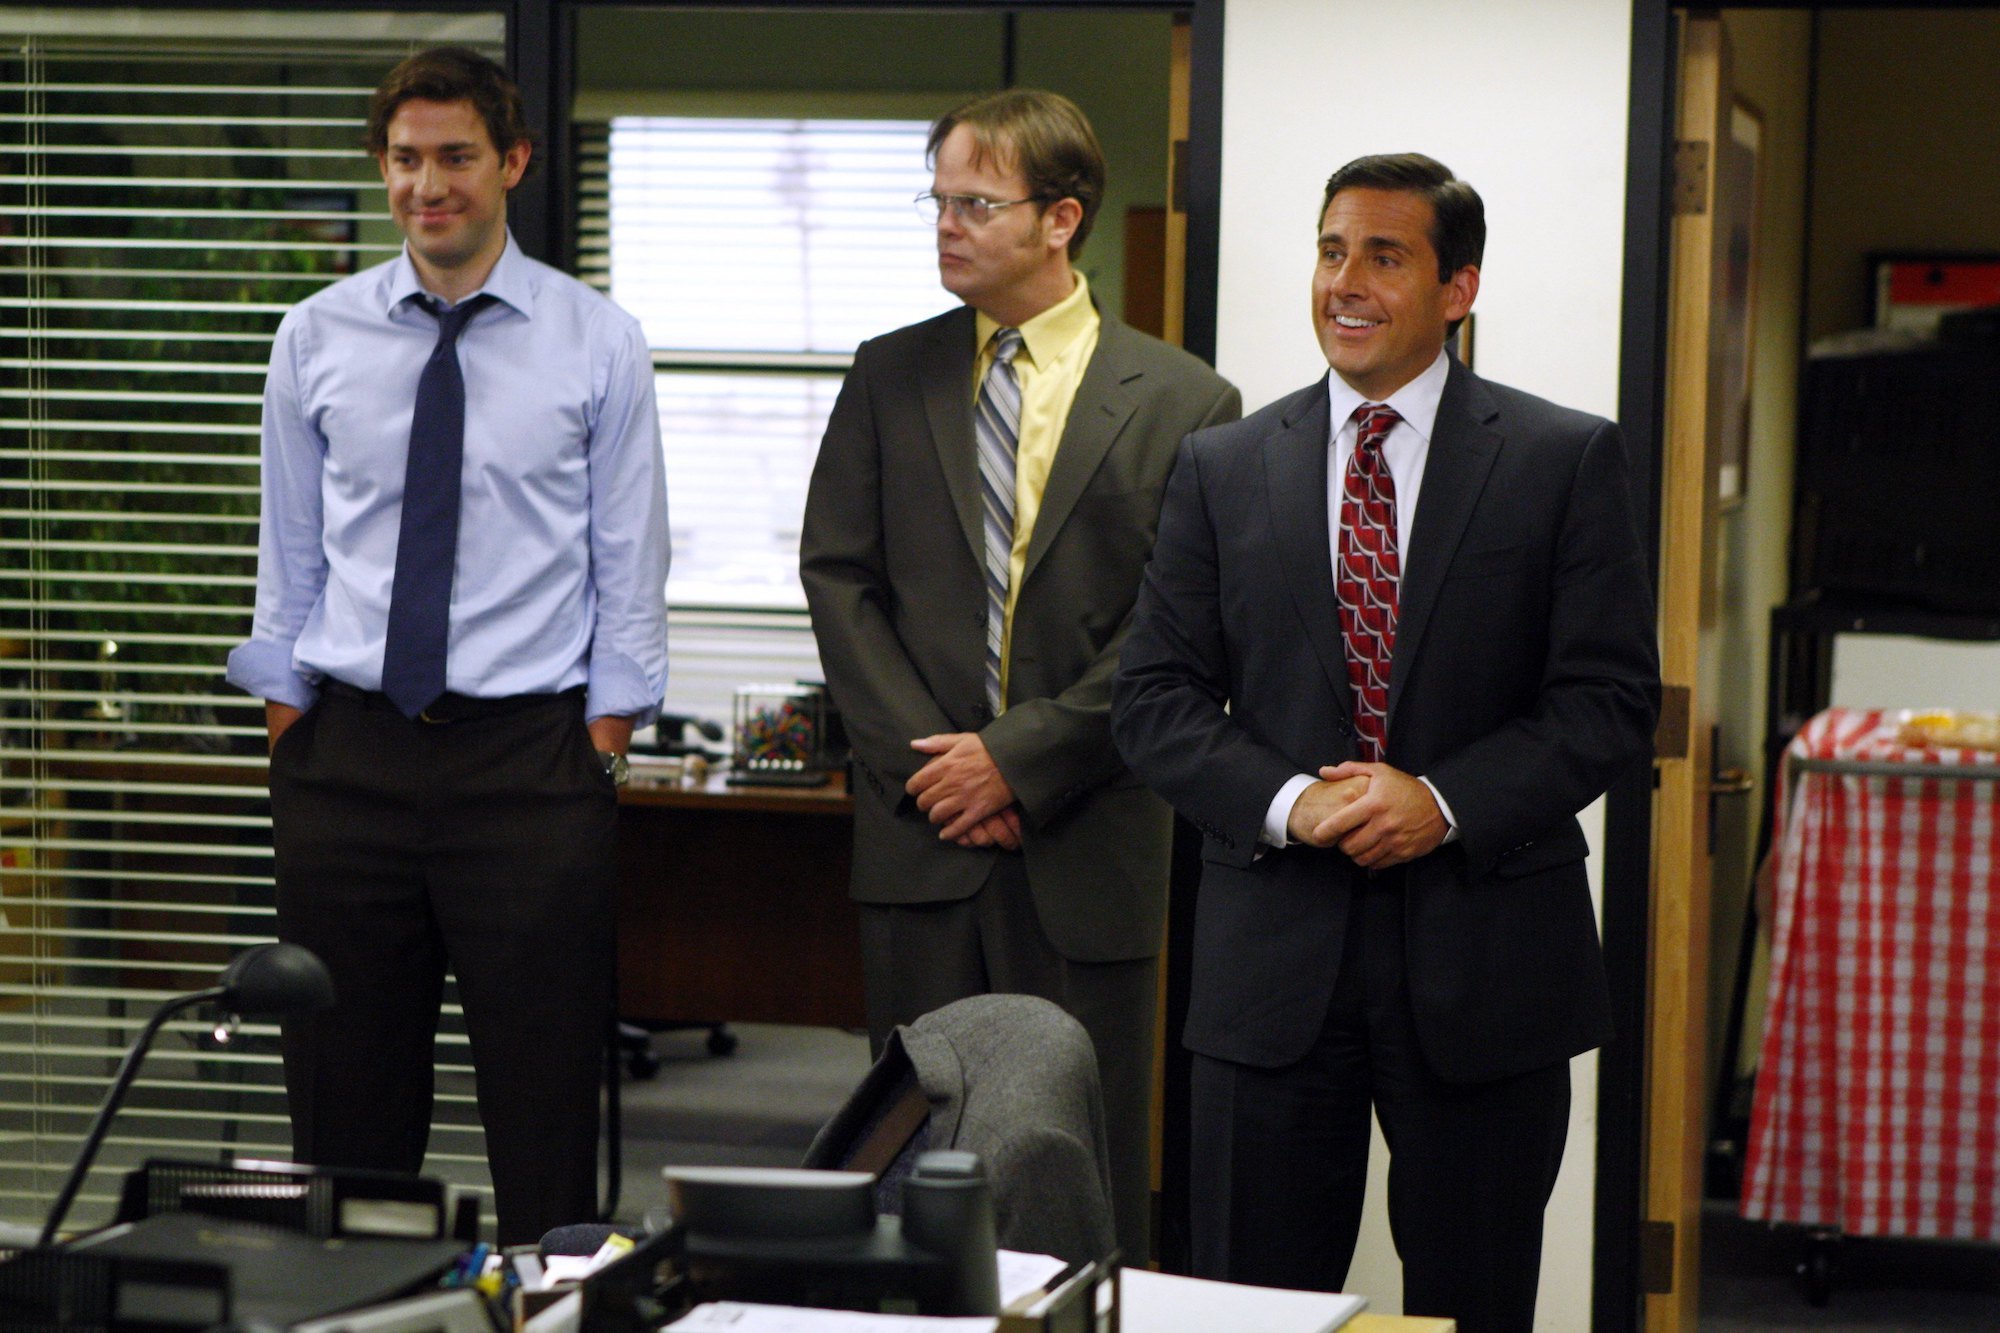 John Krasinski, Rainn Wilson, and Steve Carell in The Office